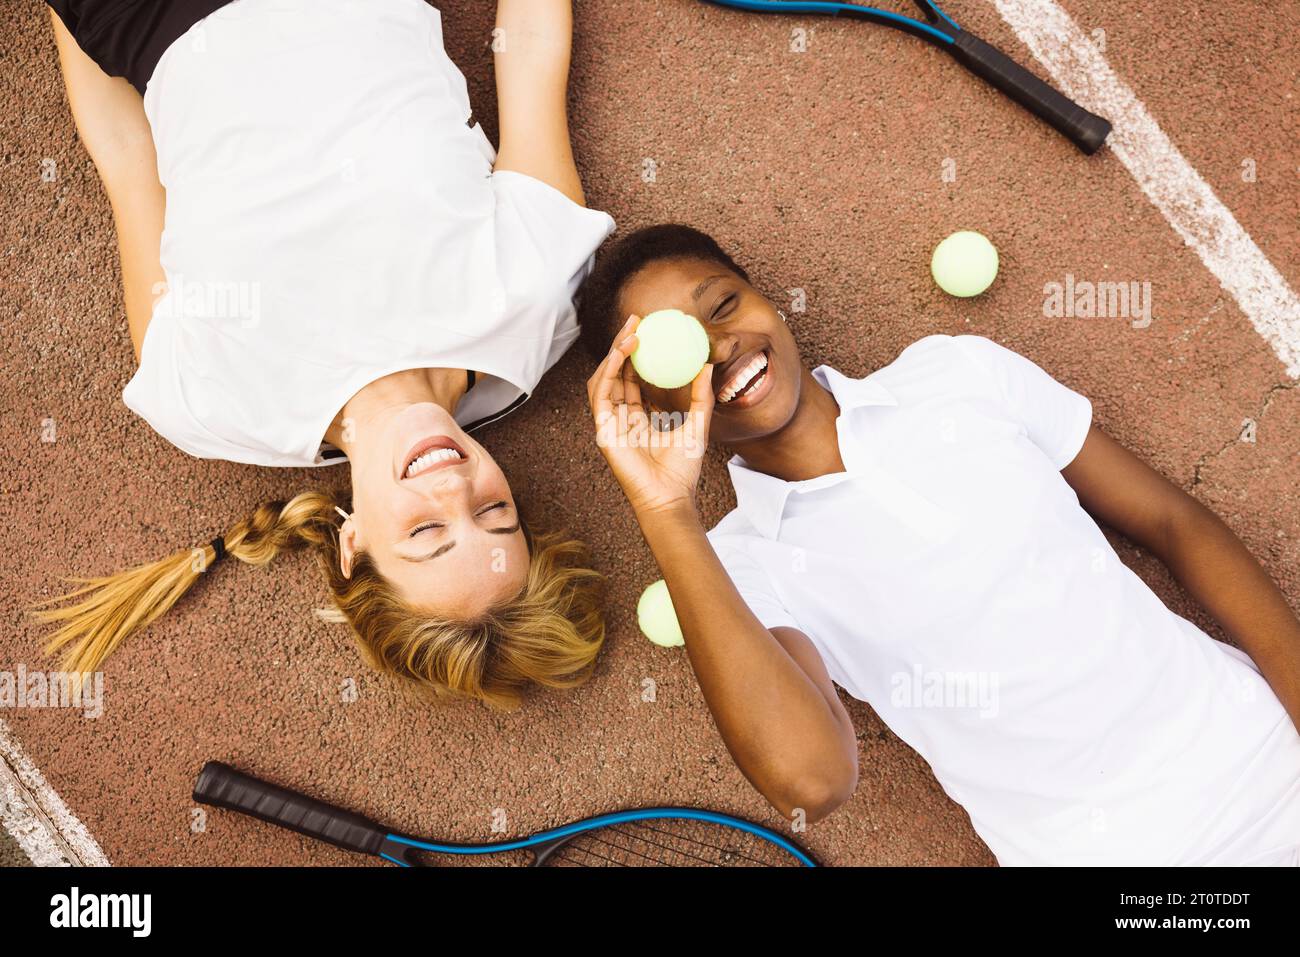 Portrait de deux jeunes femmes joueuses belles avec des vêtements de tennis et des raquettes allongées sur un court de tennis. Deux amis partageant une matinée d'acti sportifs Banque D'Images